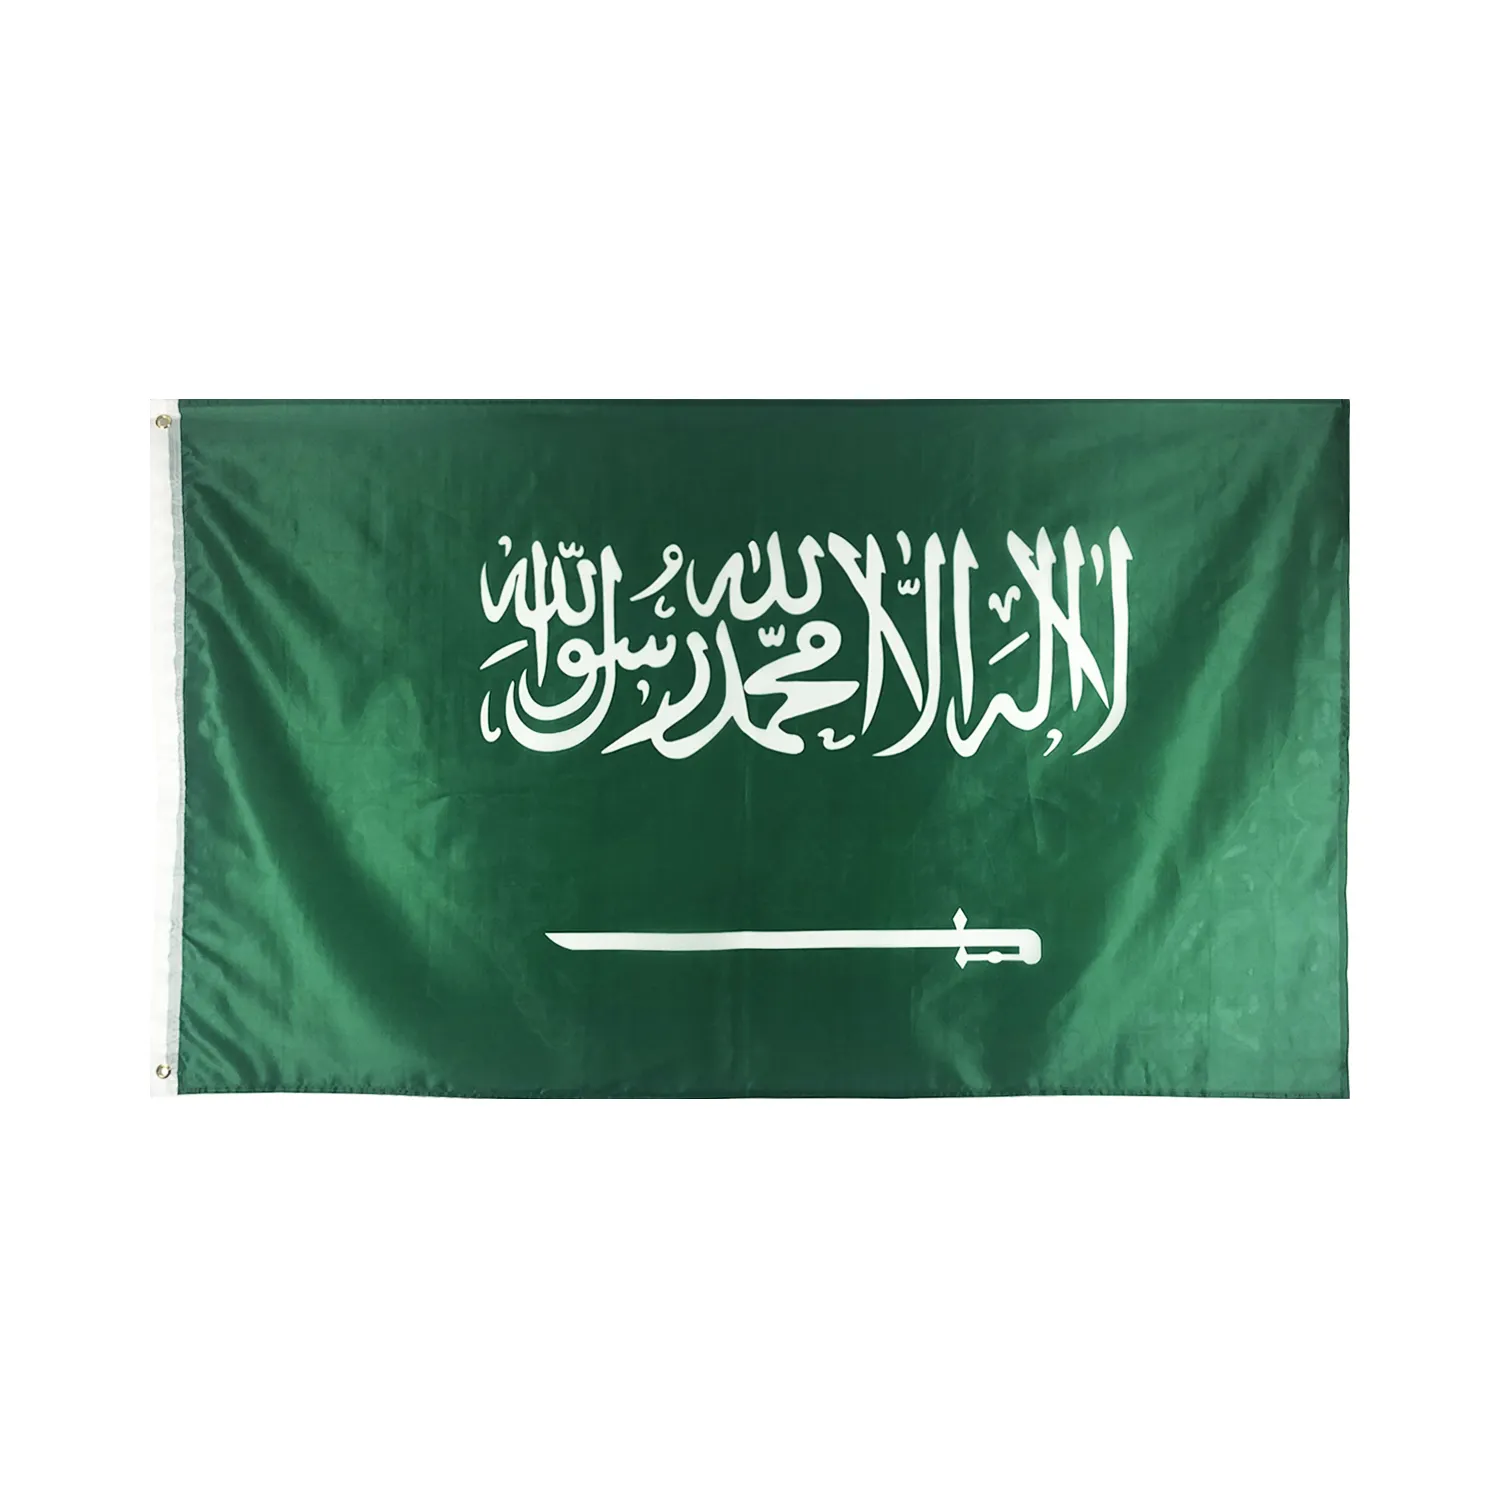 世界中の旗卸売3x5Ftカスタムフライングスポーツ100% ポリエステルバナーサウジアラビア旗を出荷する準備ができて